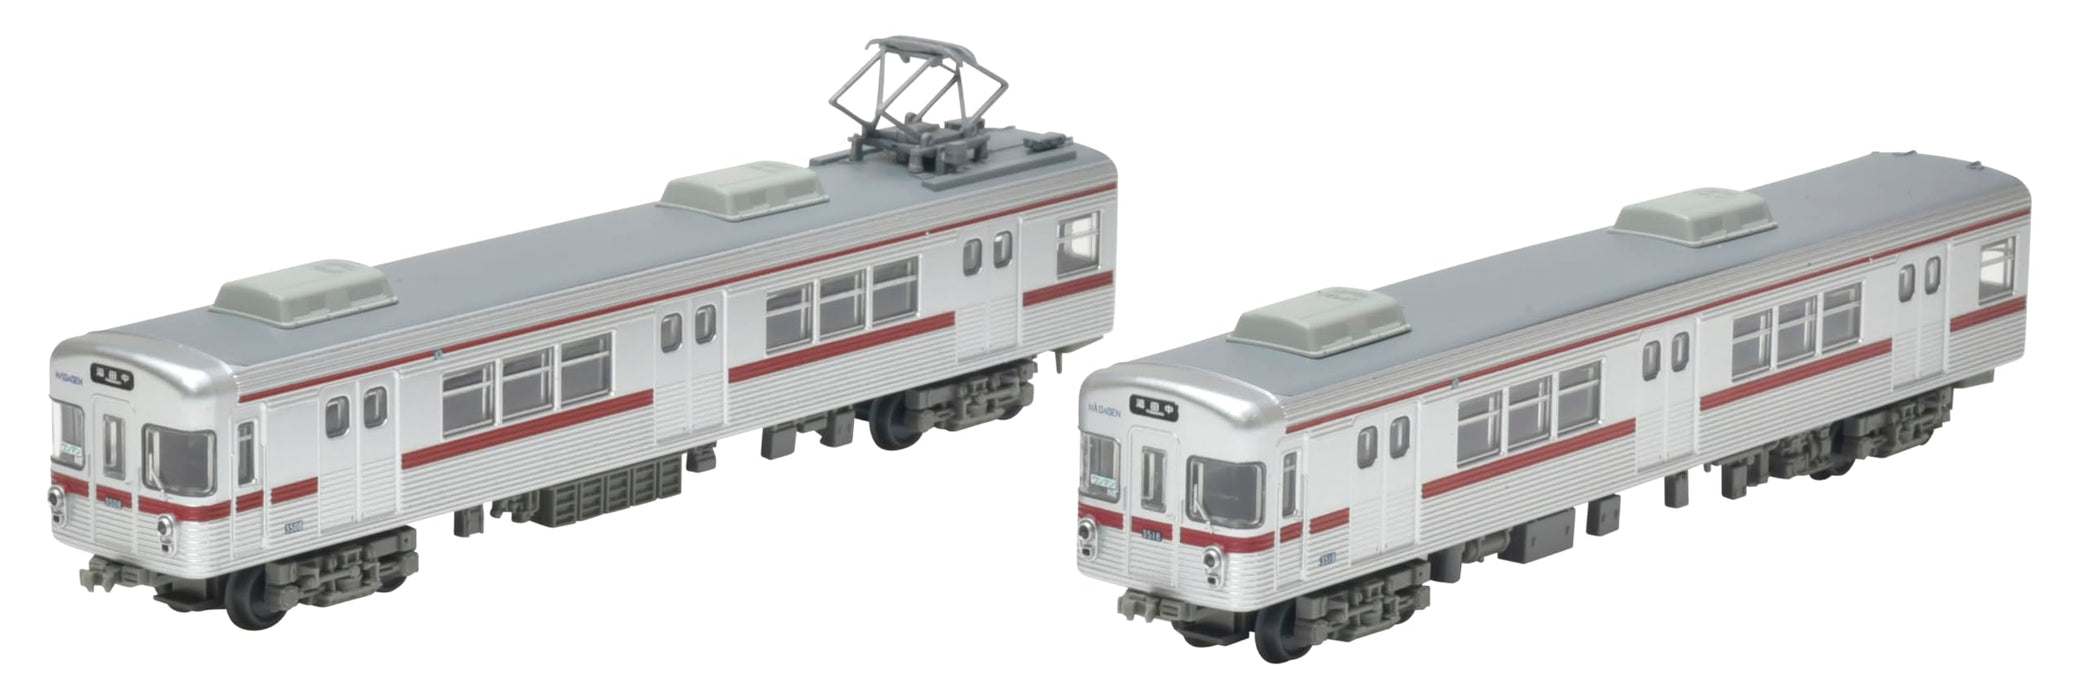 Collection ferroviaire Tomytec - Diorama de 2 voitures commémoratives de la série 3500 du chemin de fer électrique Nagano